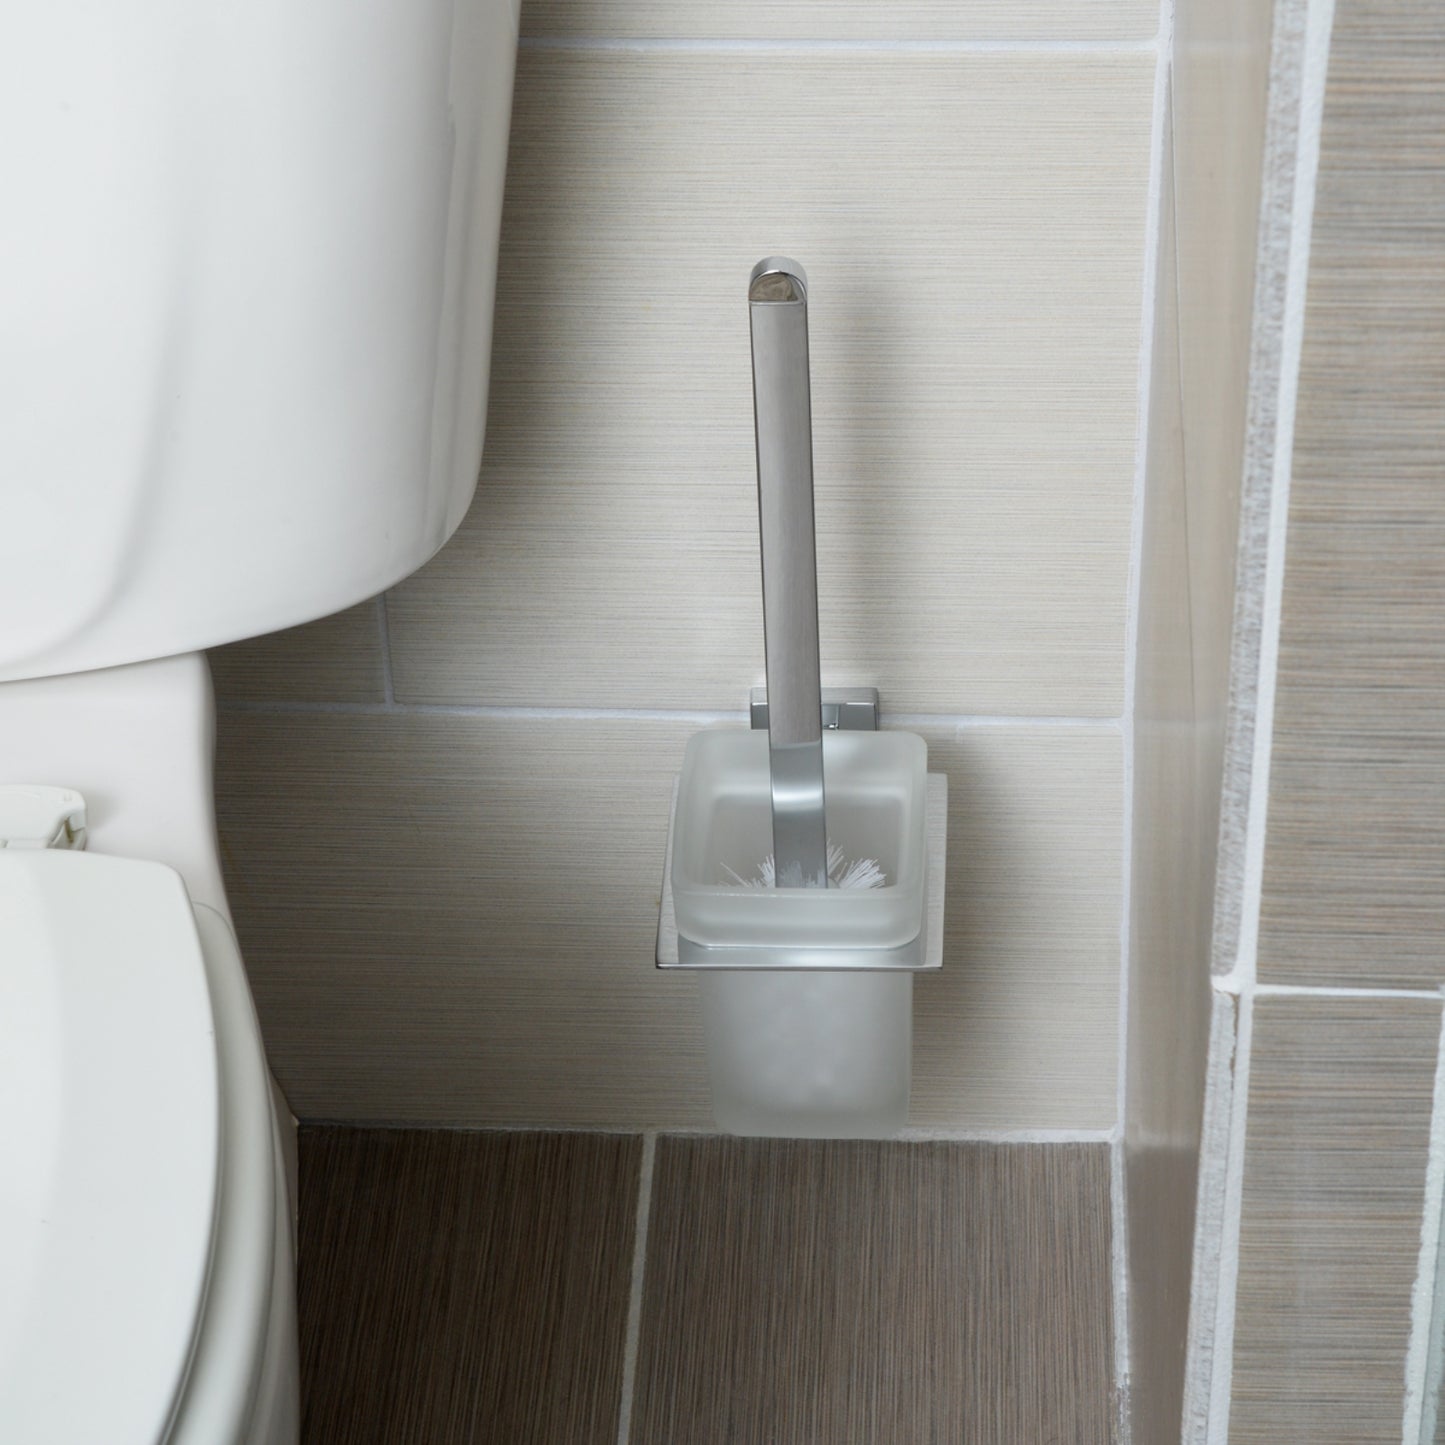 South Main Hardware Euro Toilet Brush Holder - Polished Chrome